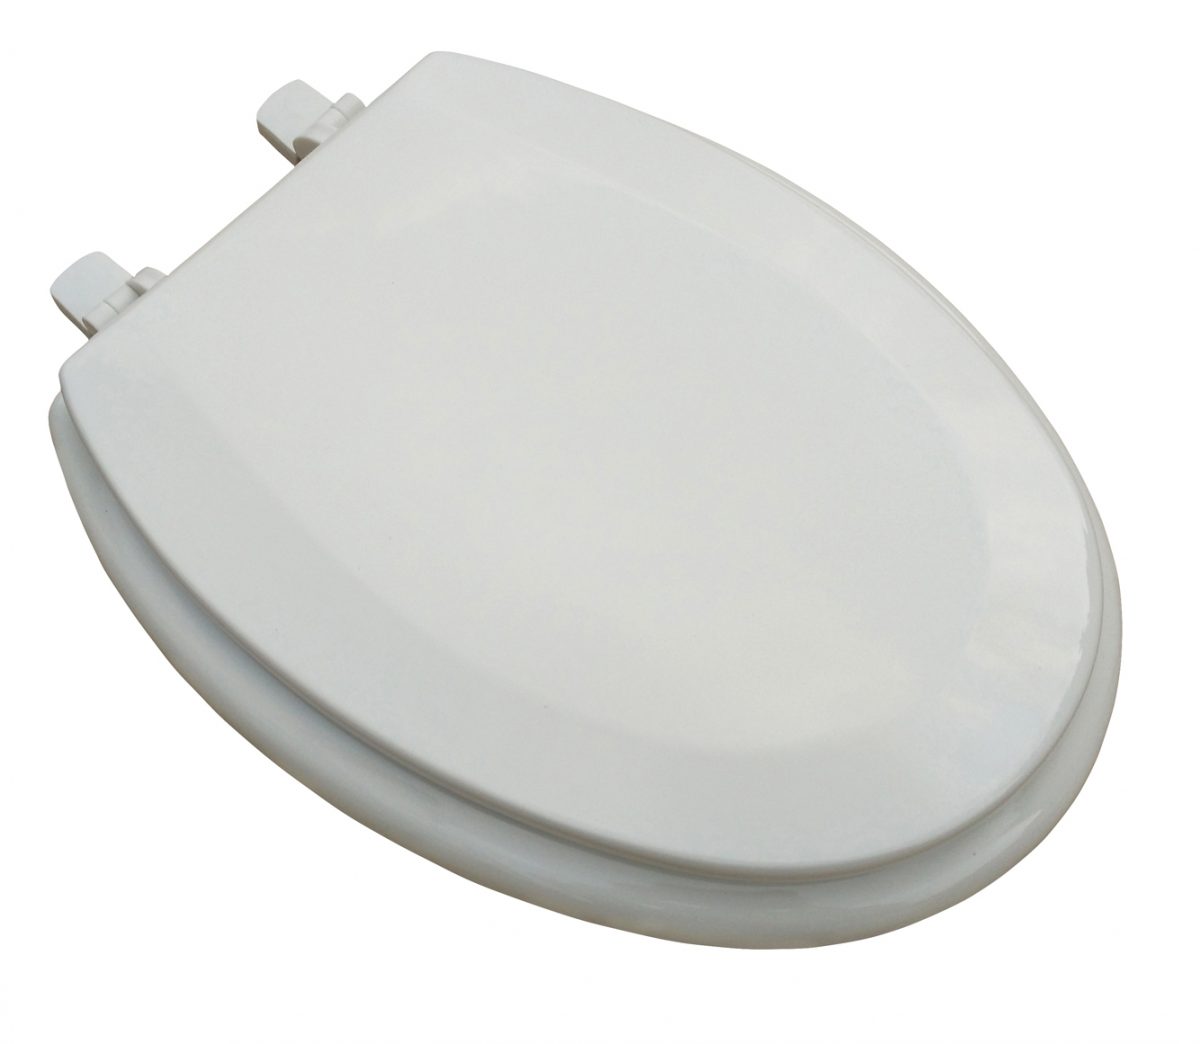 White MDF Elongated Beveled edge toilet seat.